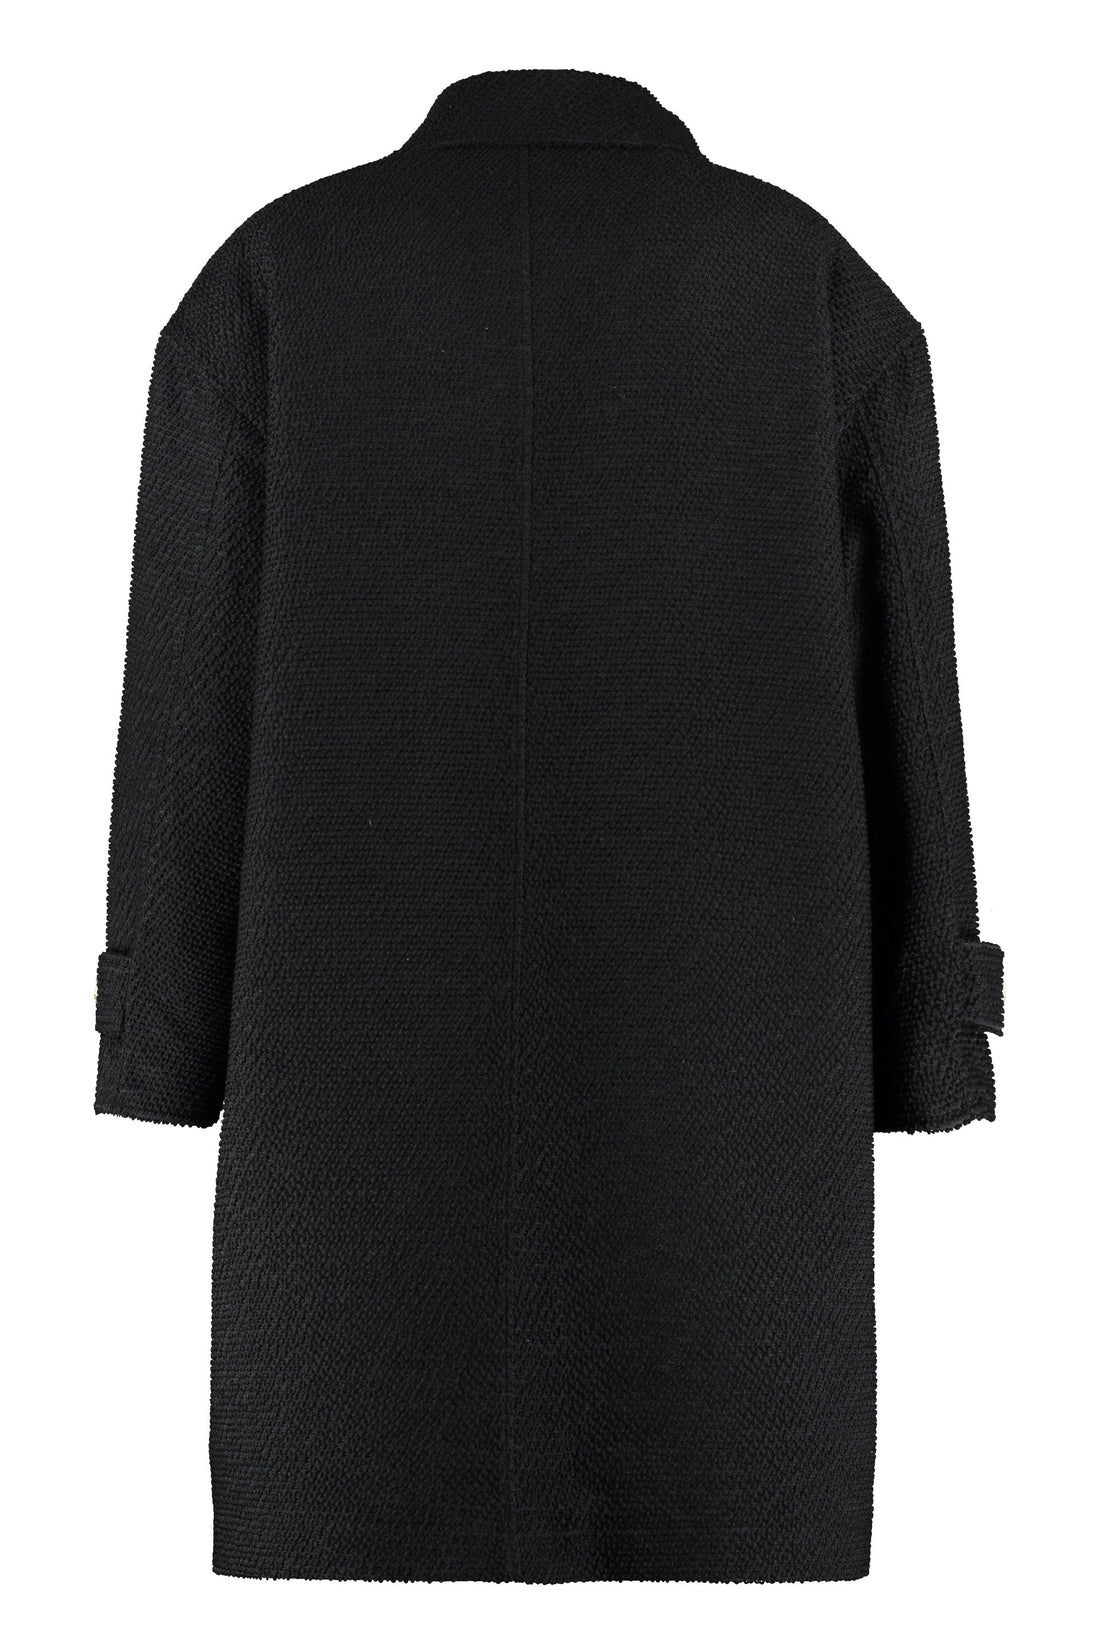 Dolce & Gabbana-OUTLET-SALE-Alpaca blend coat-ARCHIVIST